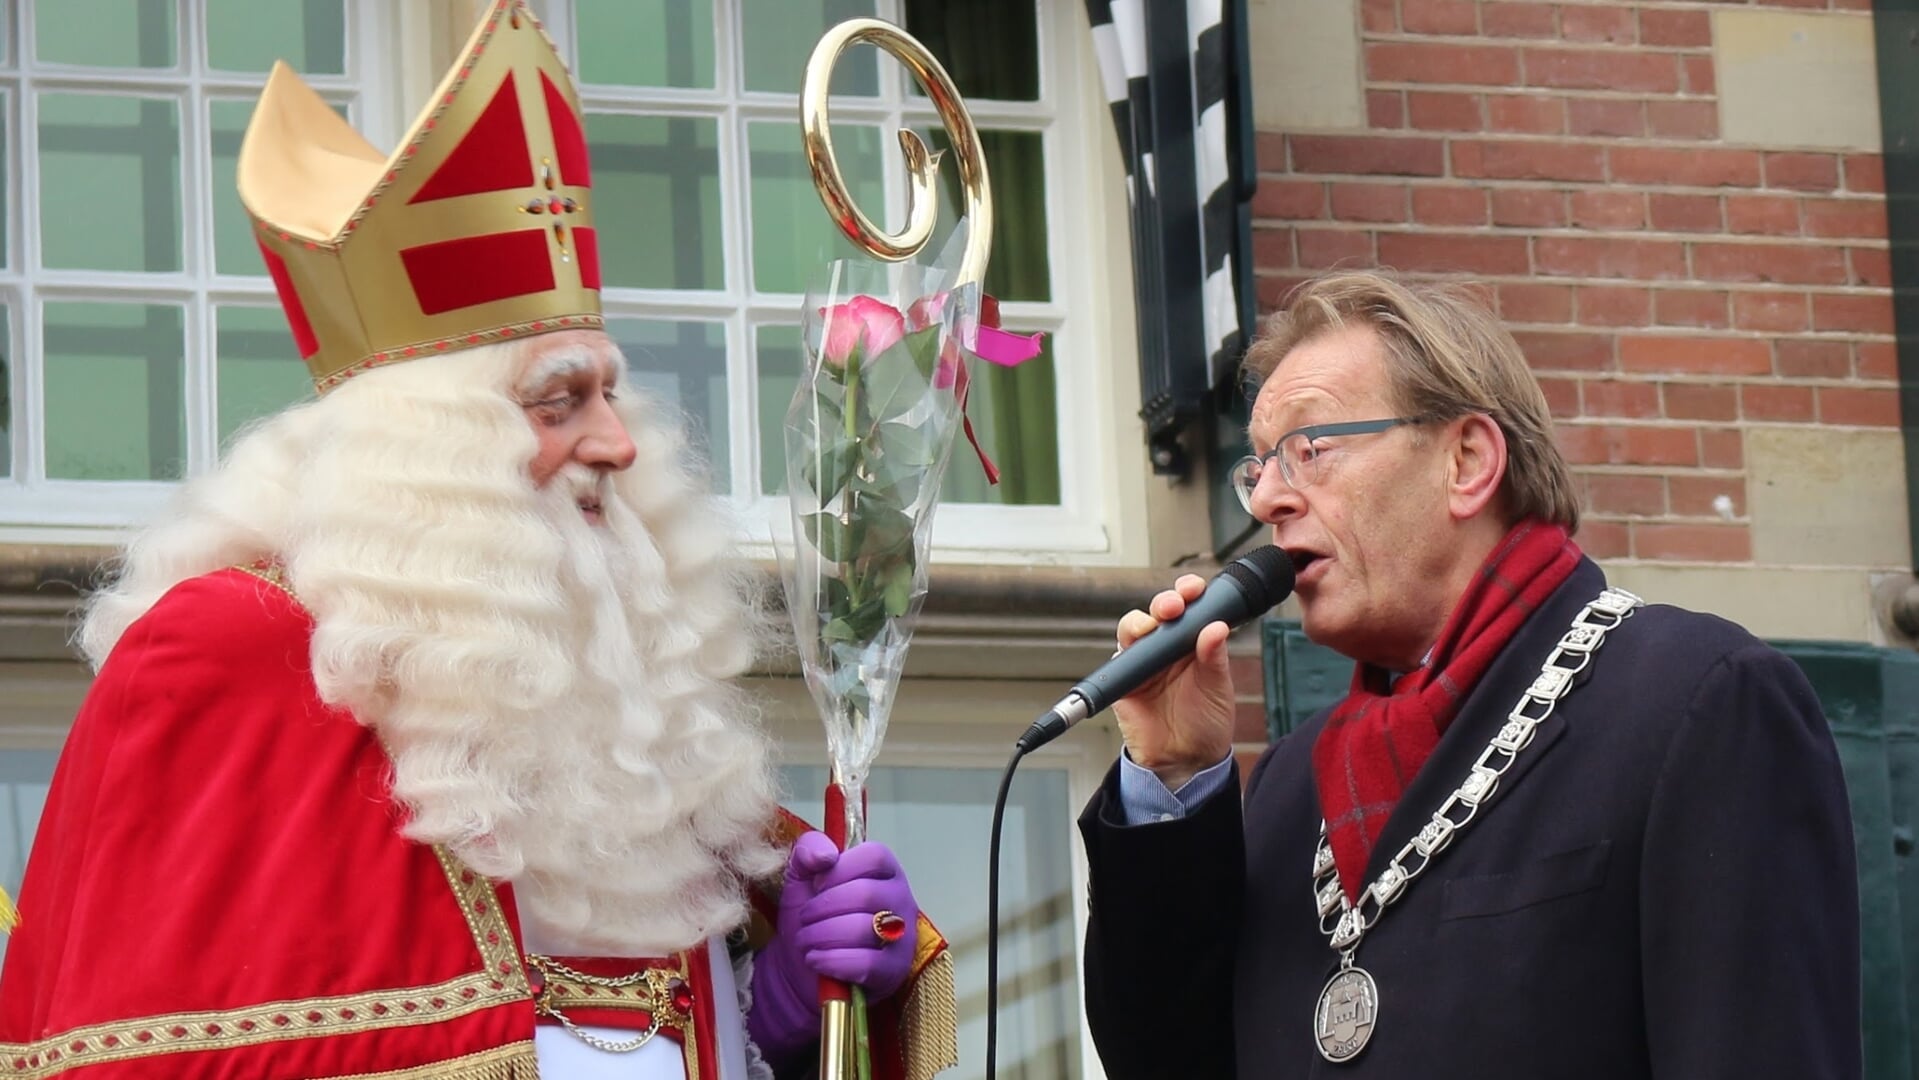 Zien we dit beeld zaterdag weer...? Of verprutst een boze buurman de ontvangst van Sinterklaas door de burgemeester?